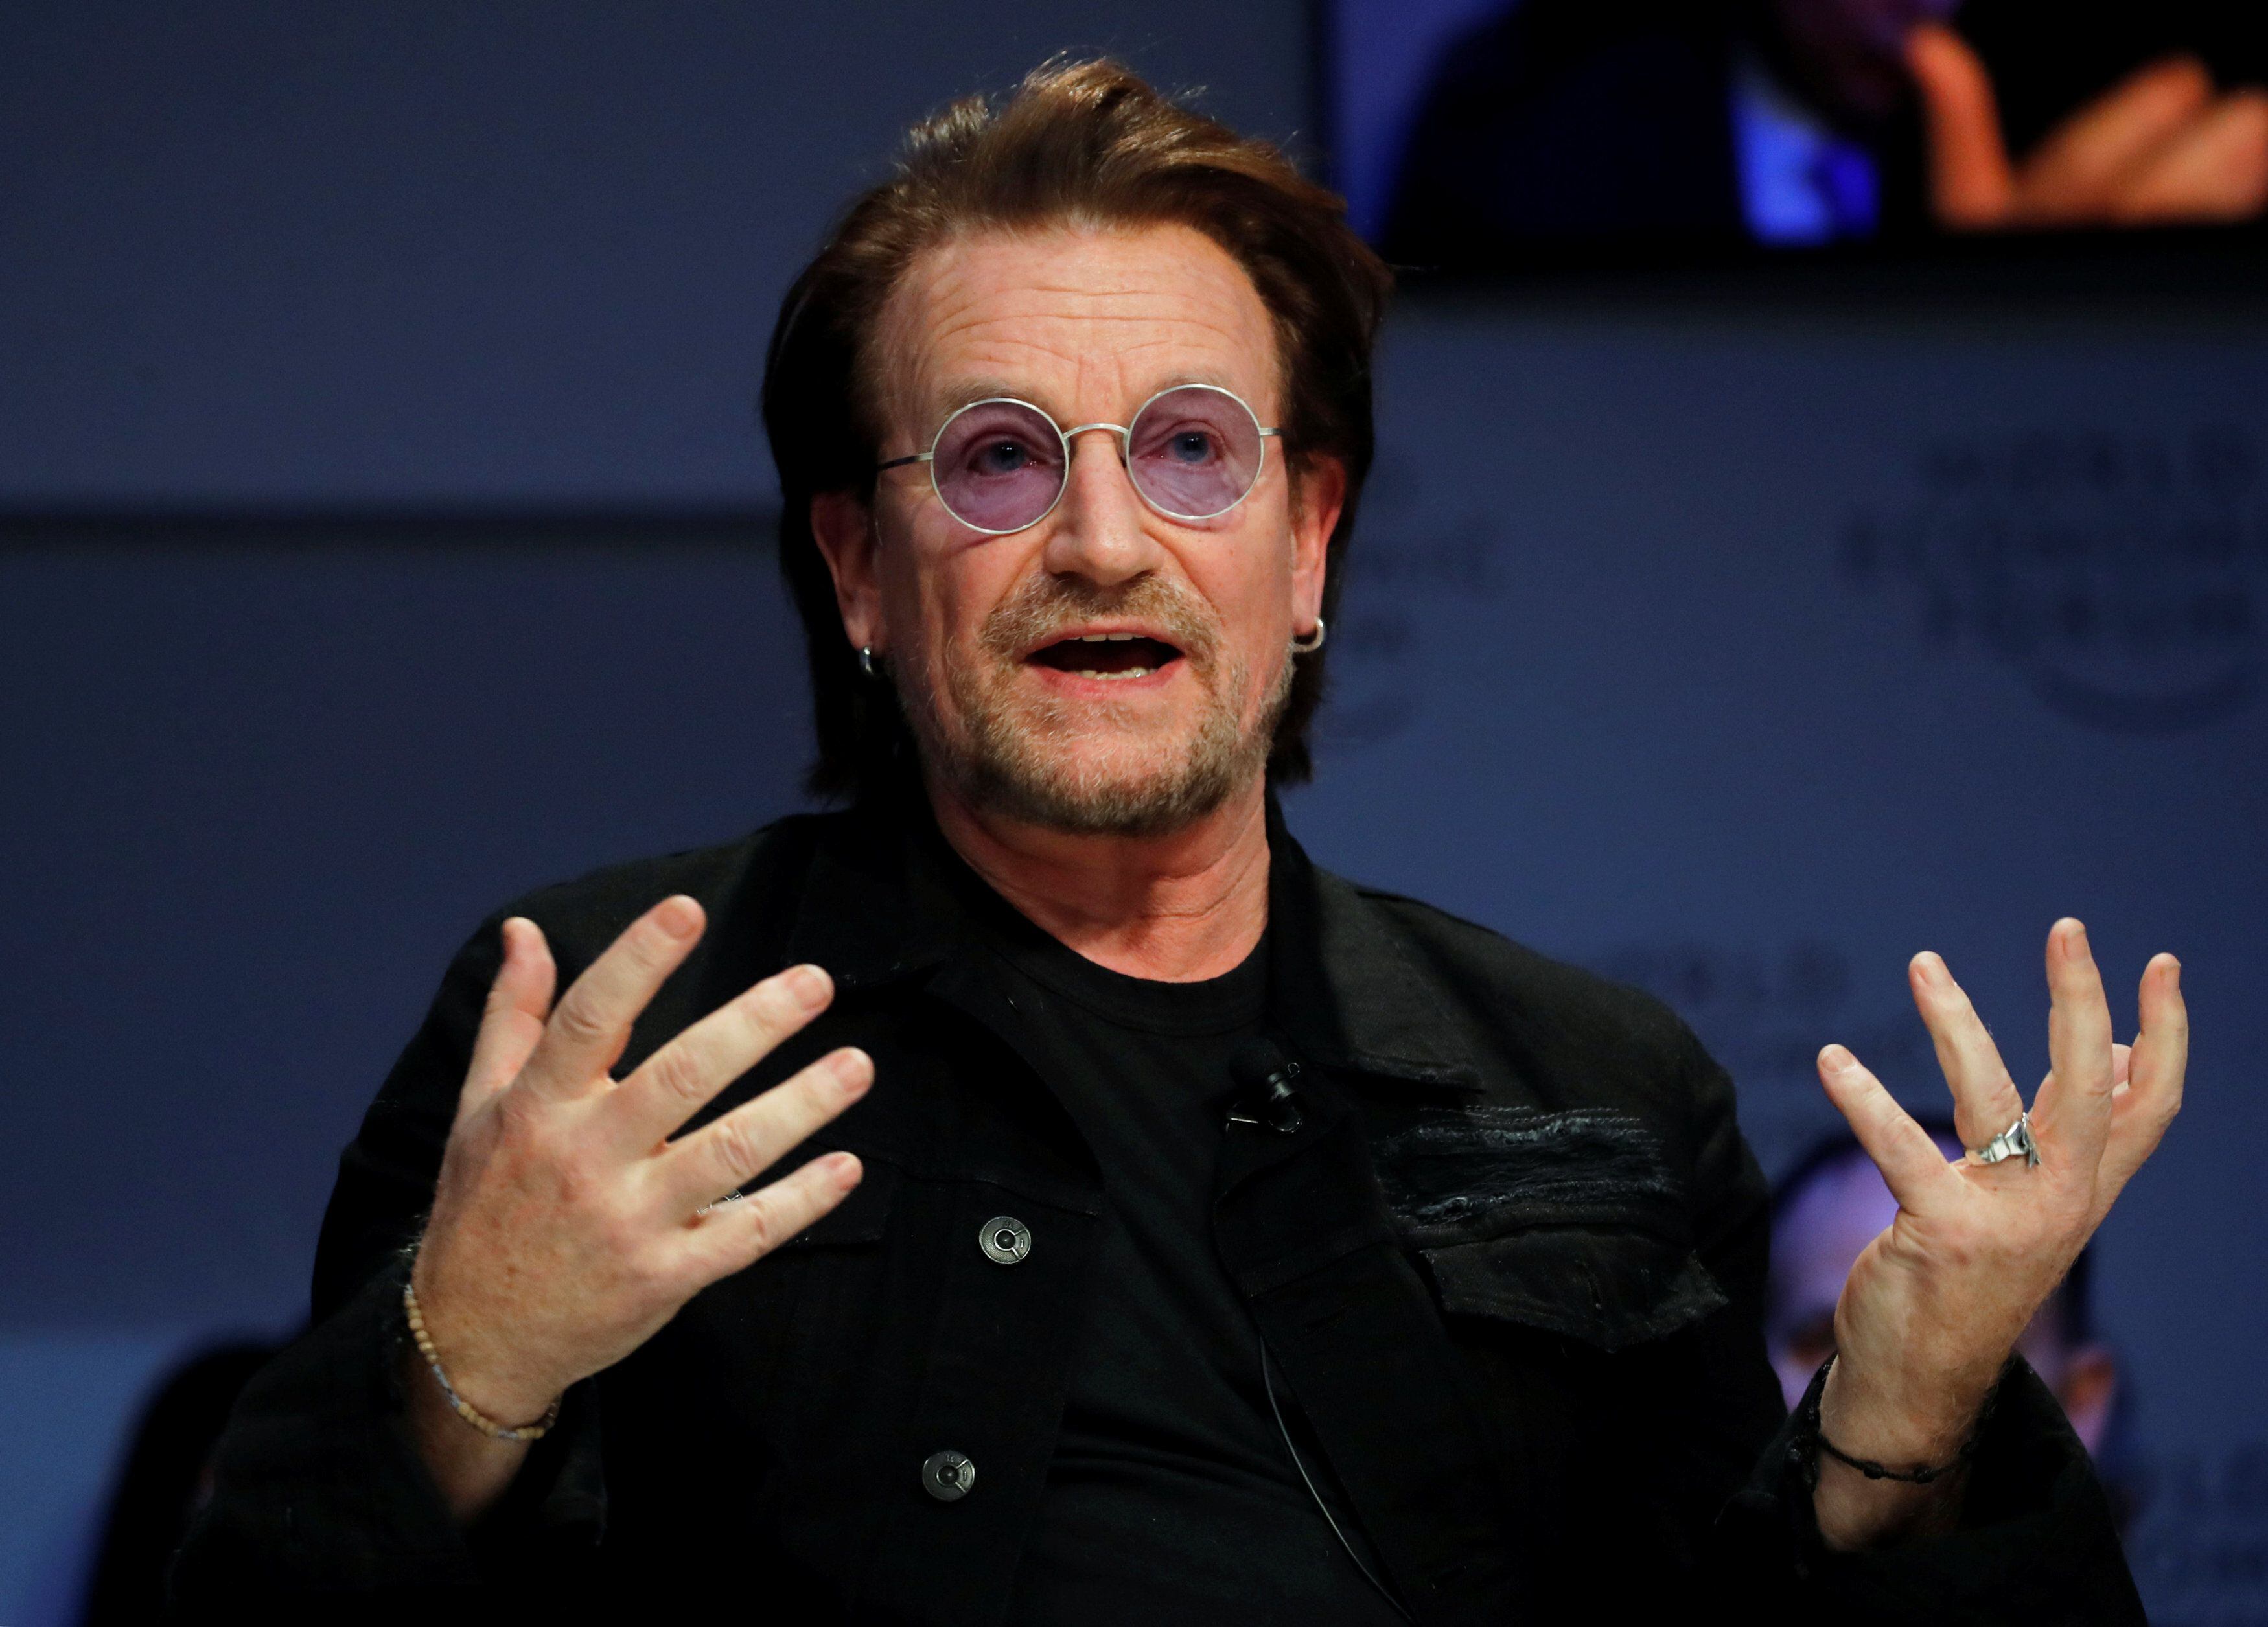 El músico irlandés Bono toma distancia de la "visión hippie de Cristo"
(foto de archivo, año 2019. REUTERS/Arnd Wiegmann)